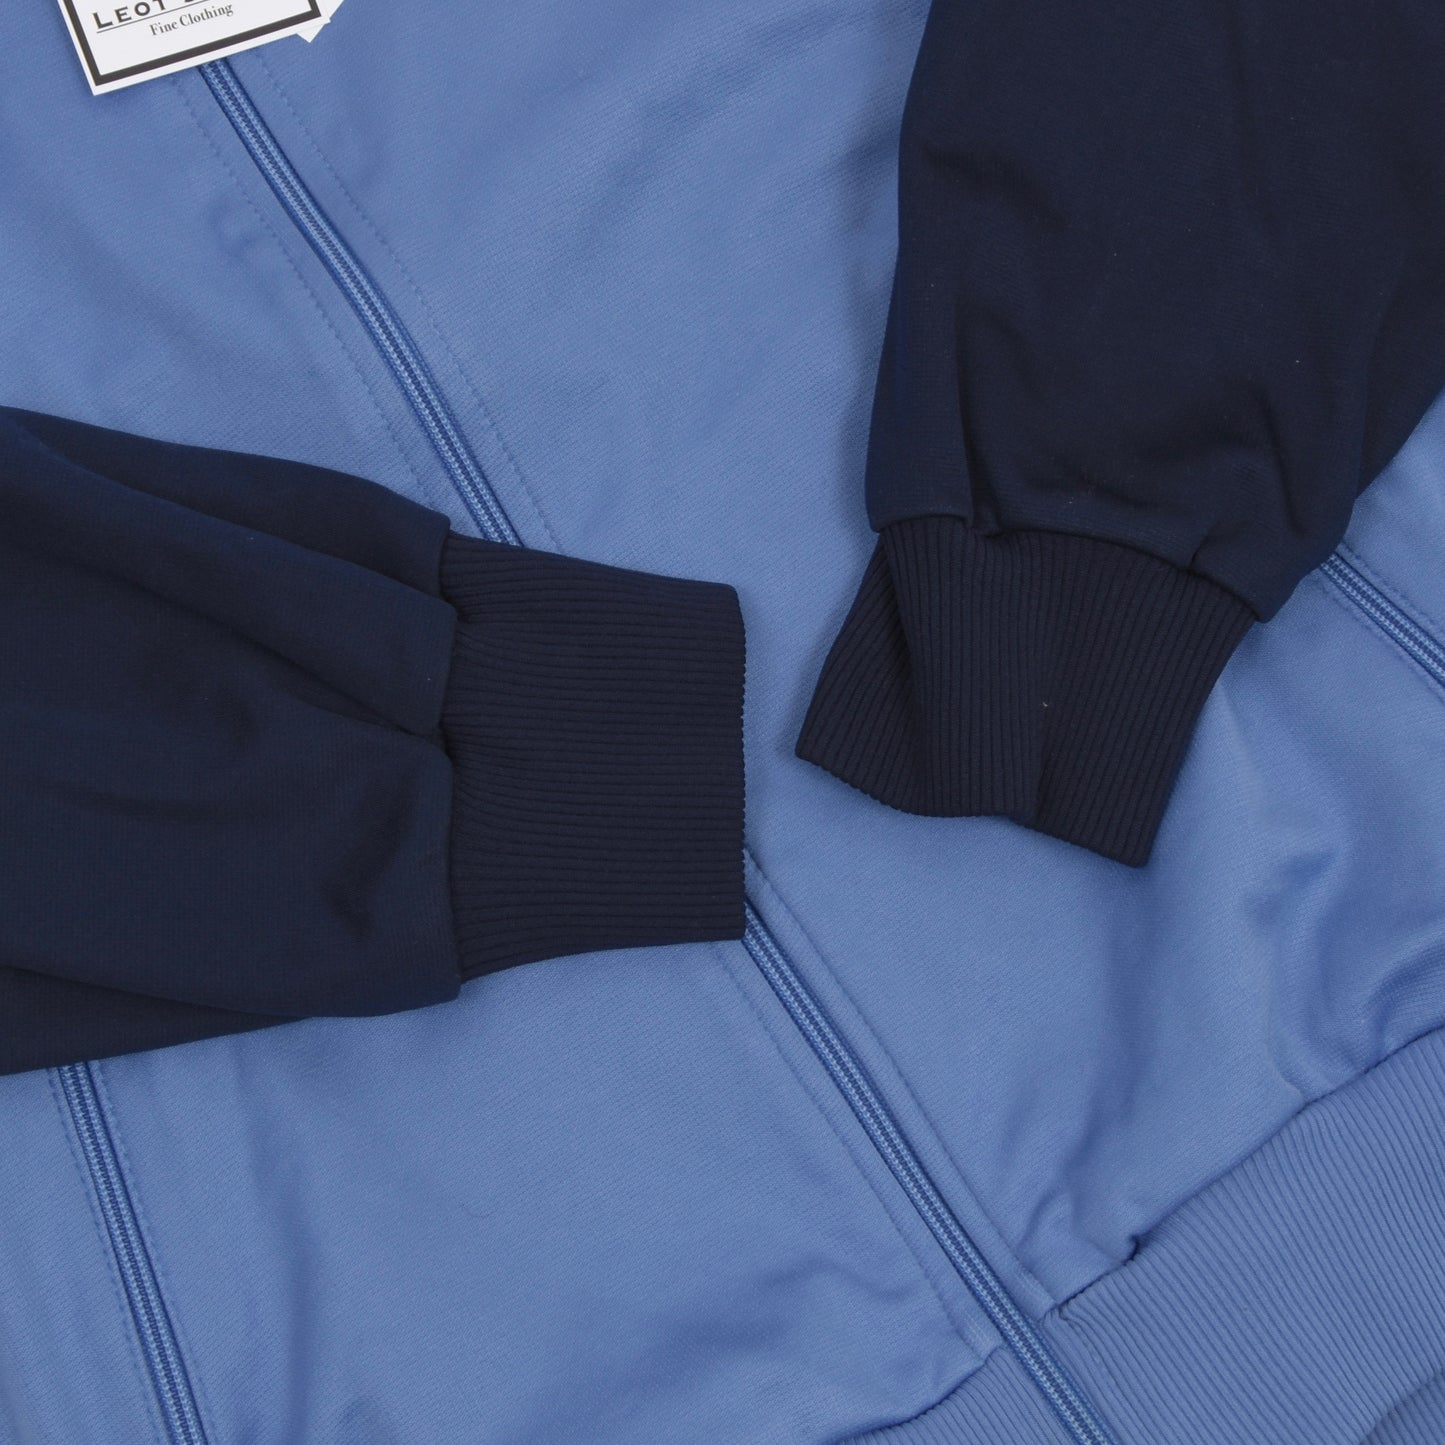 Vintage Adidas Track Jacket Size D46/XS - Blue/Grey/Navy Blue